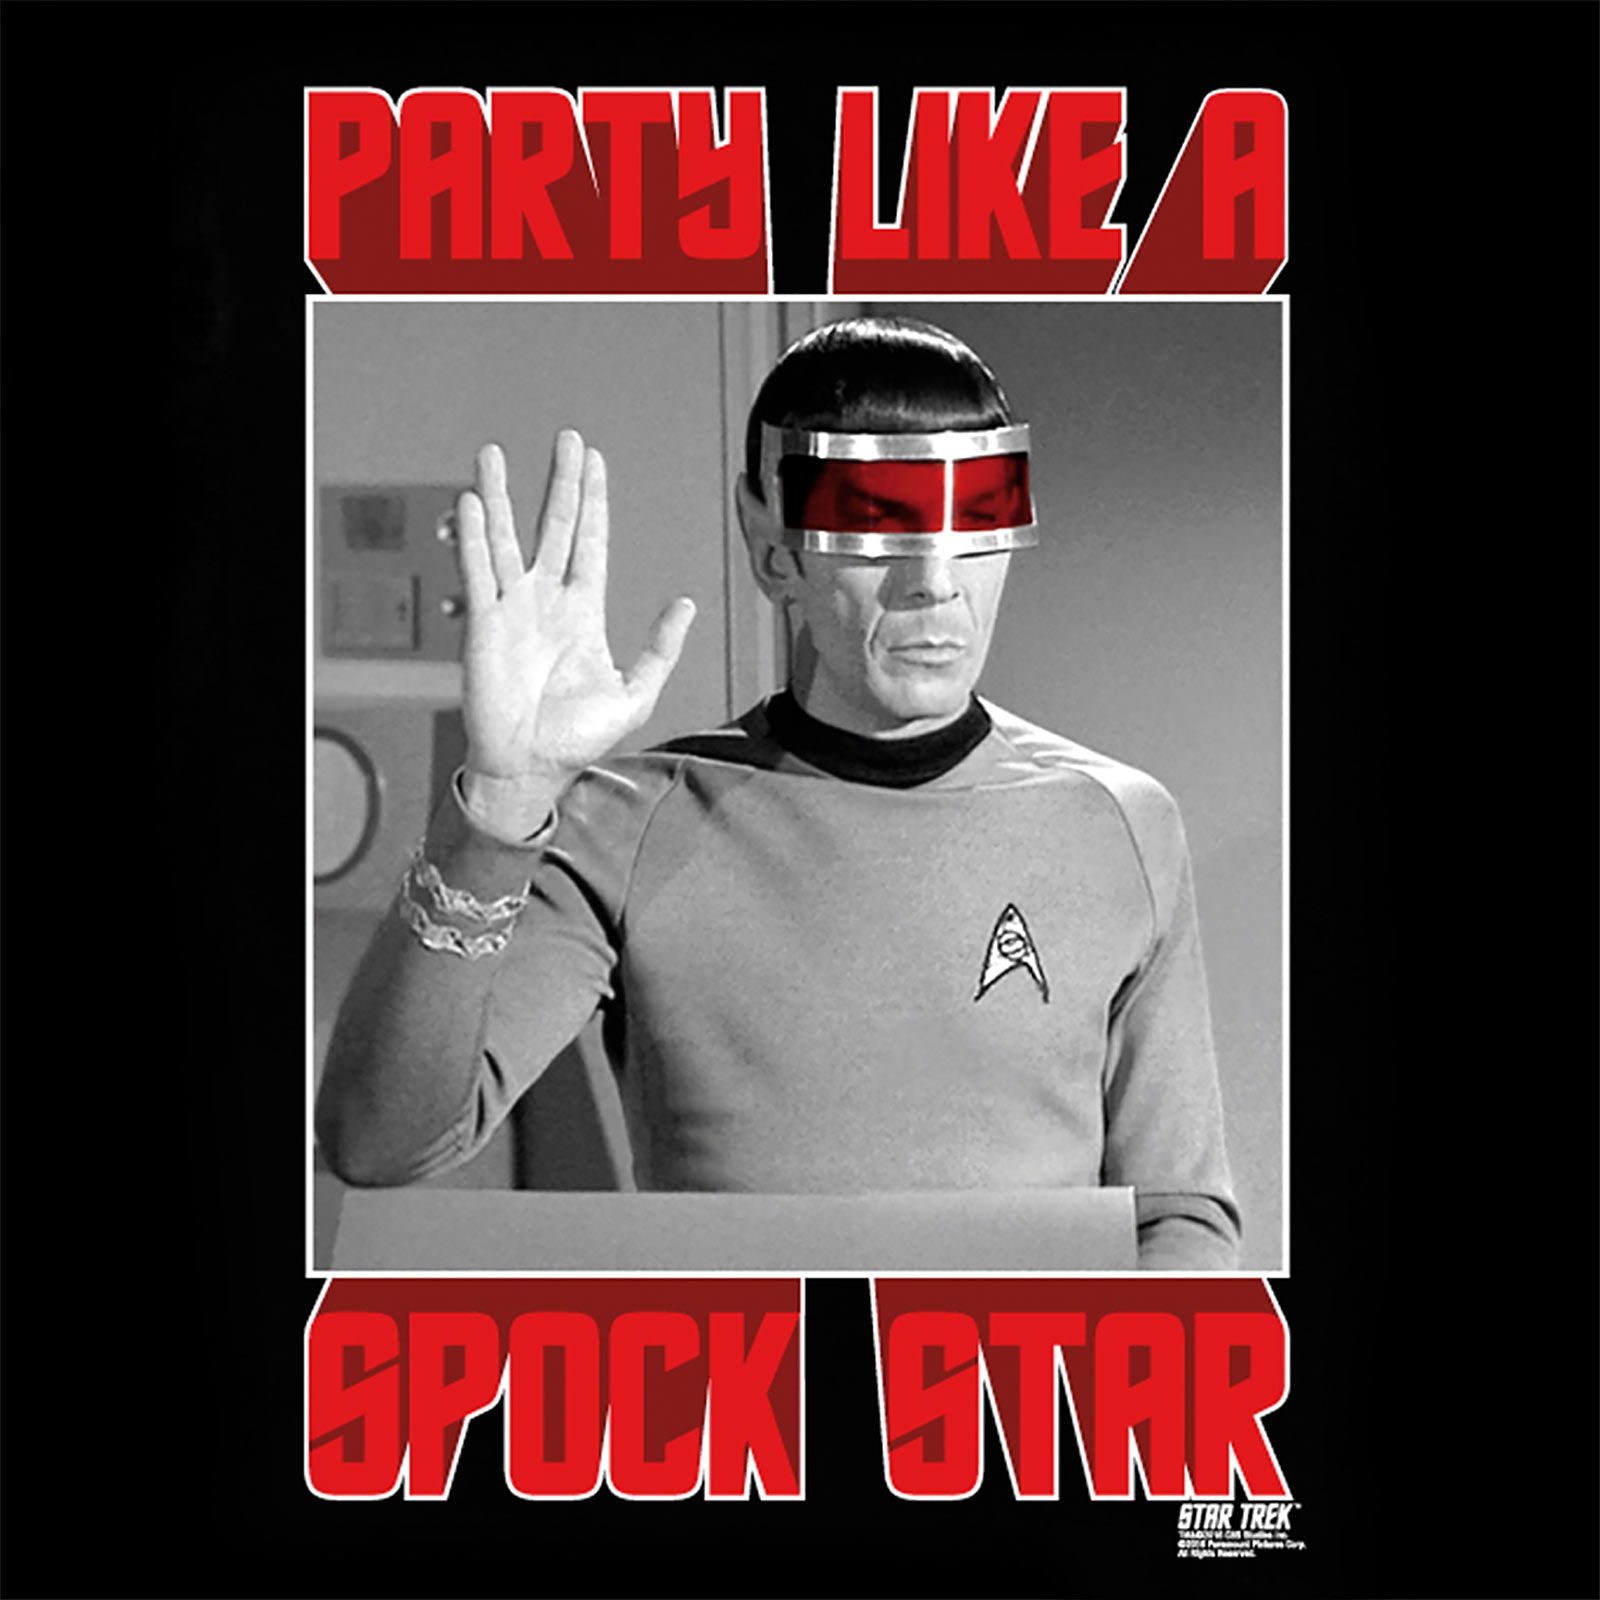 Star Trek - Spock Star T-Shirt Black